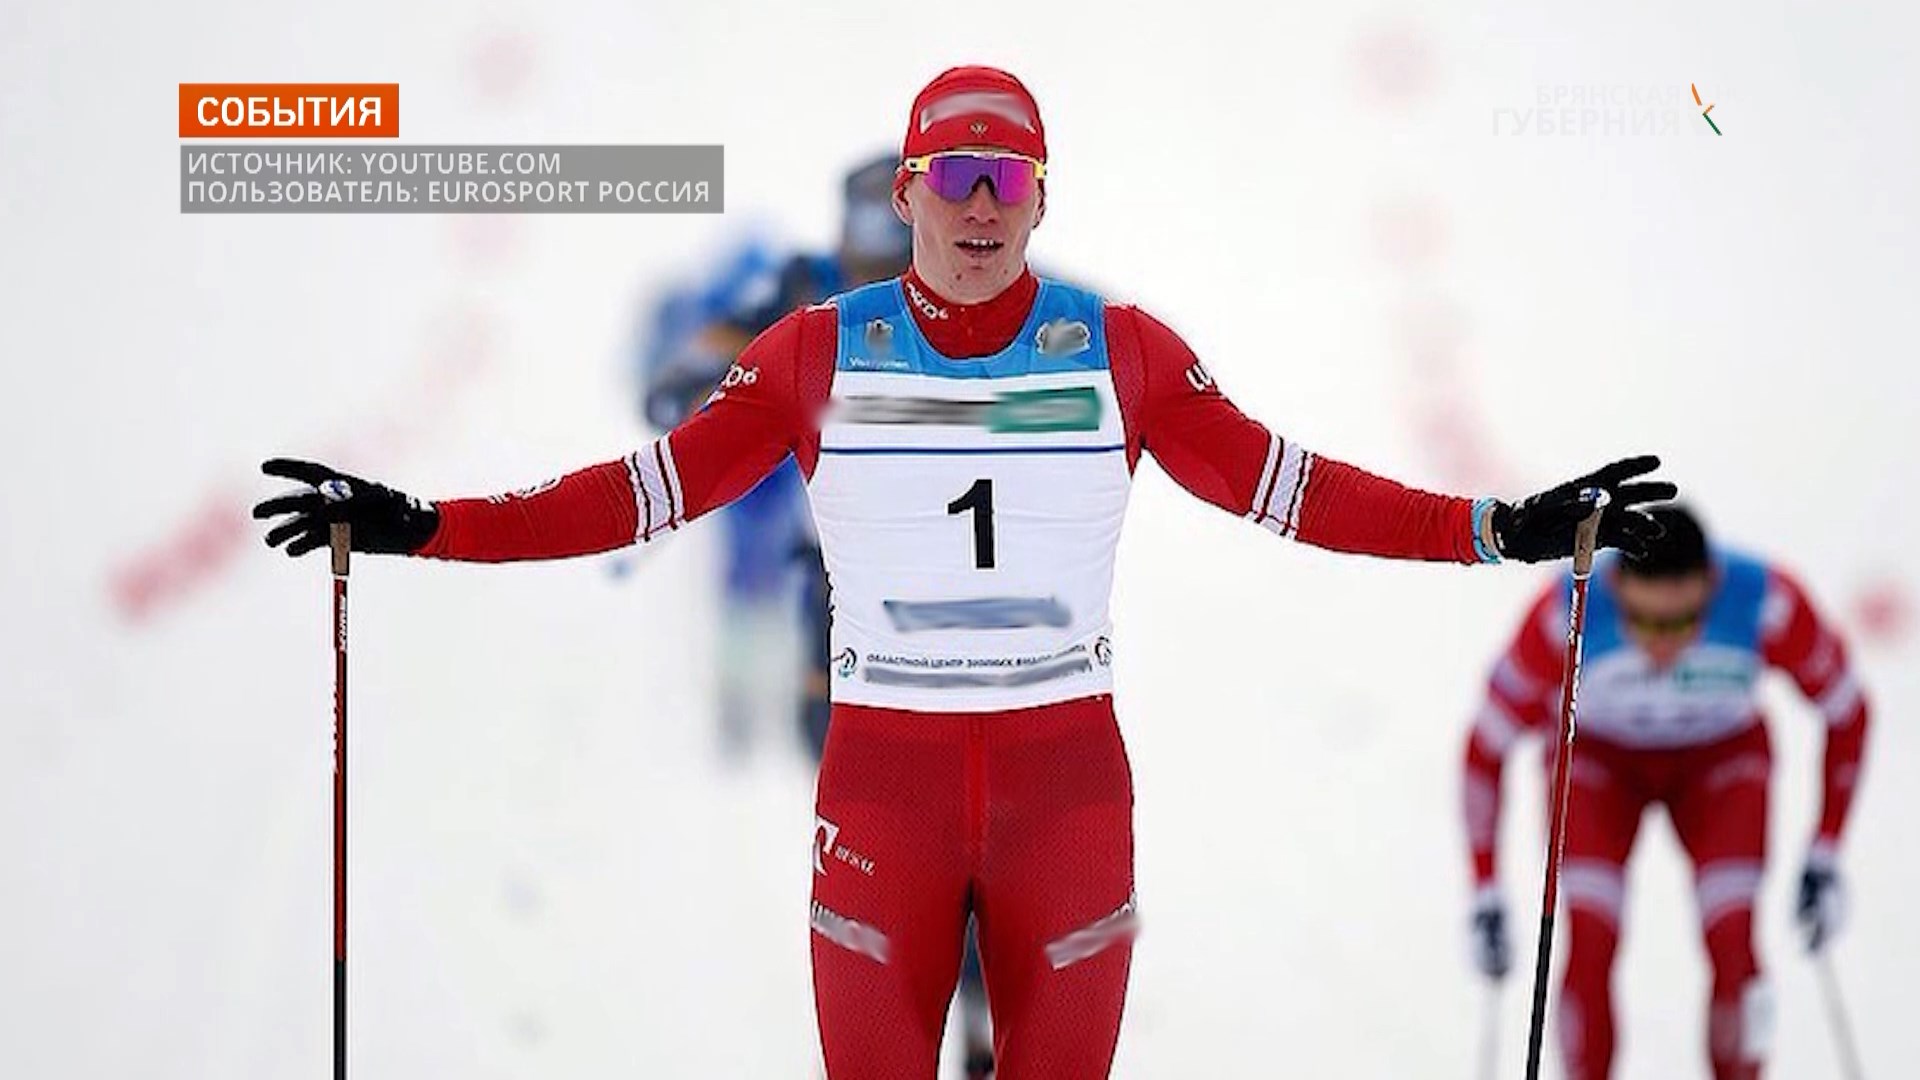 Брянскому лыжнику Александру Большунову пожелали золотоносной Олимпиады в Пекине